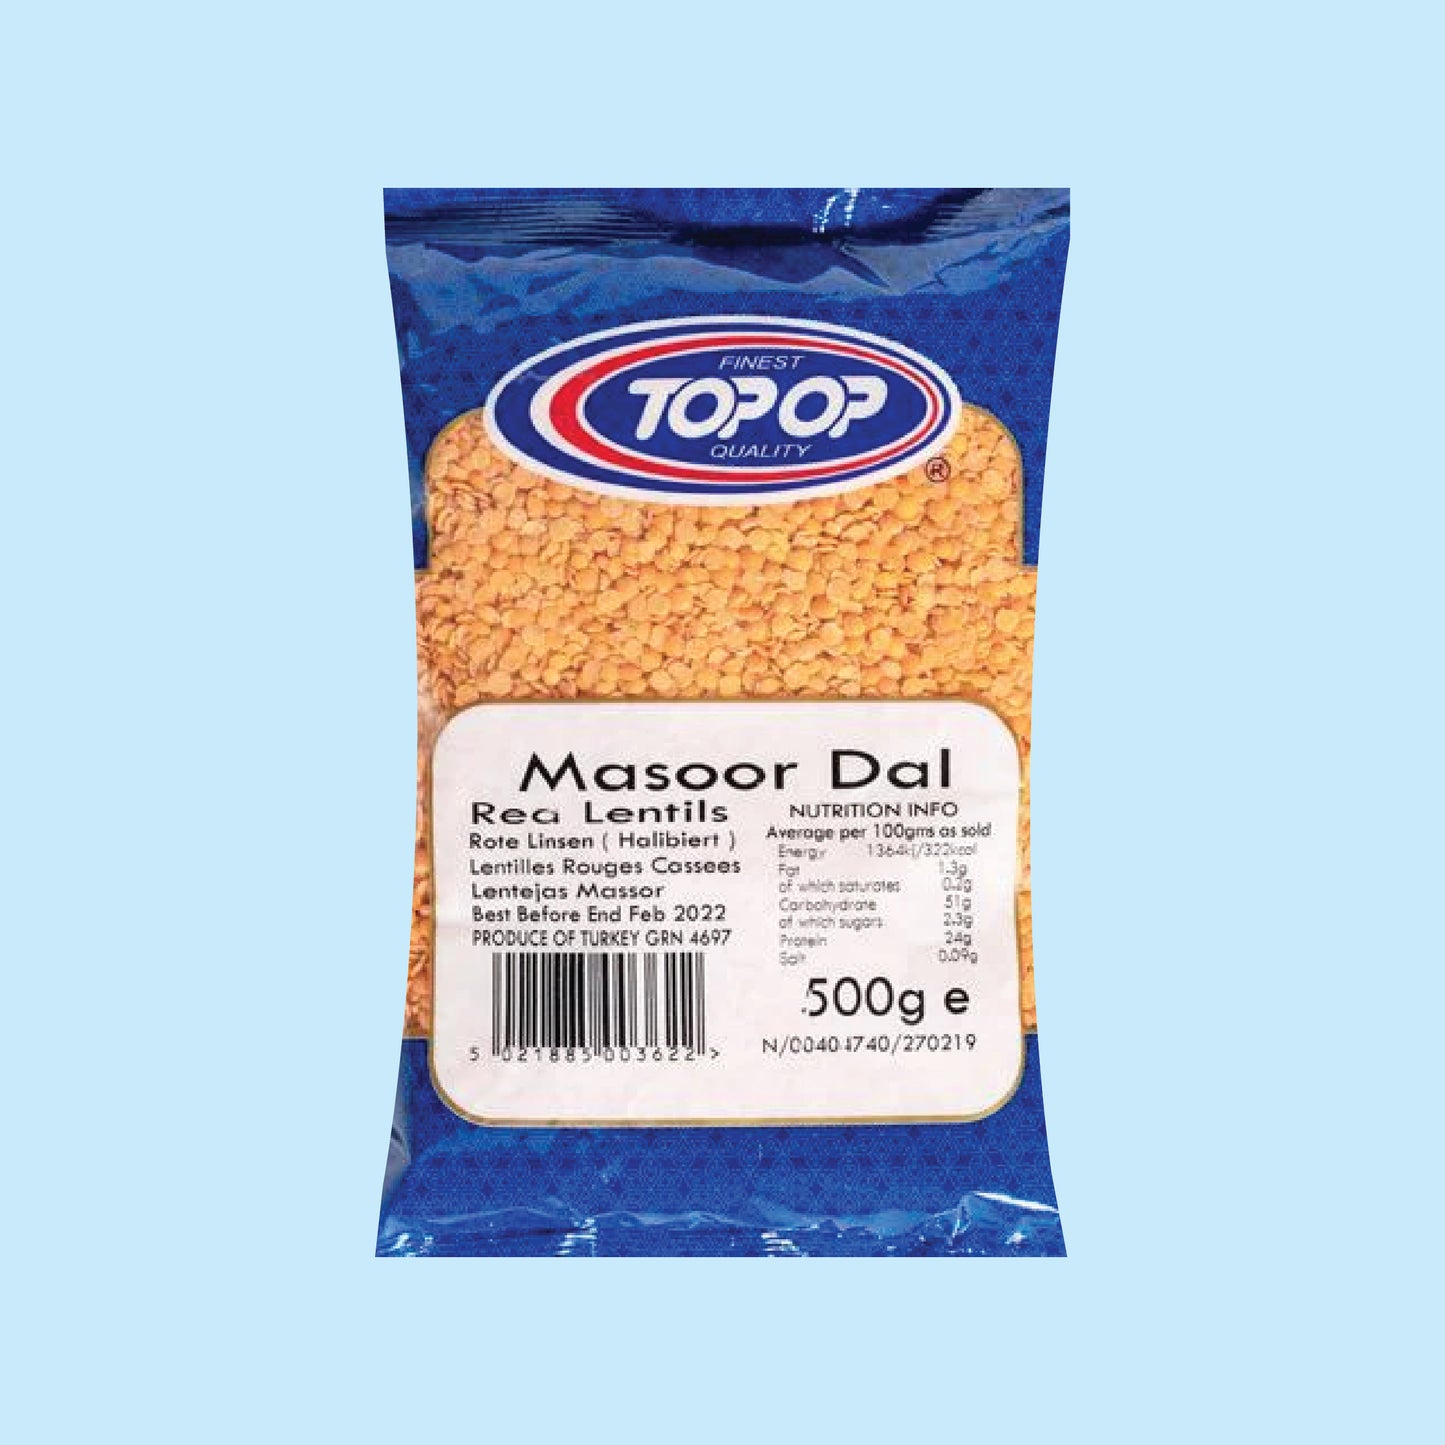 Top-Op Masoor Dal